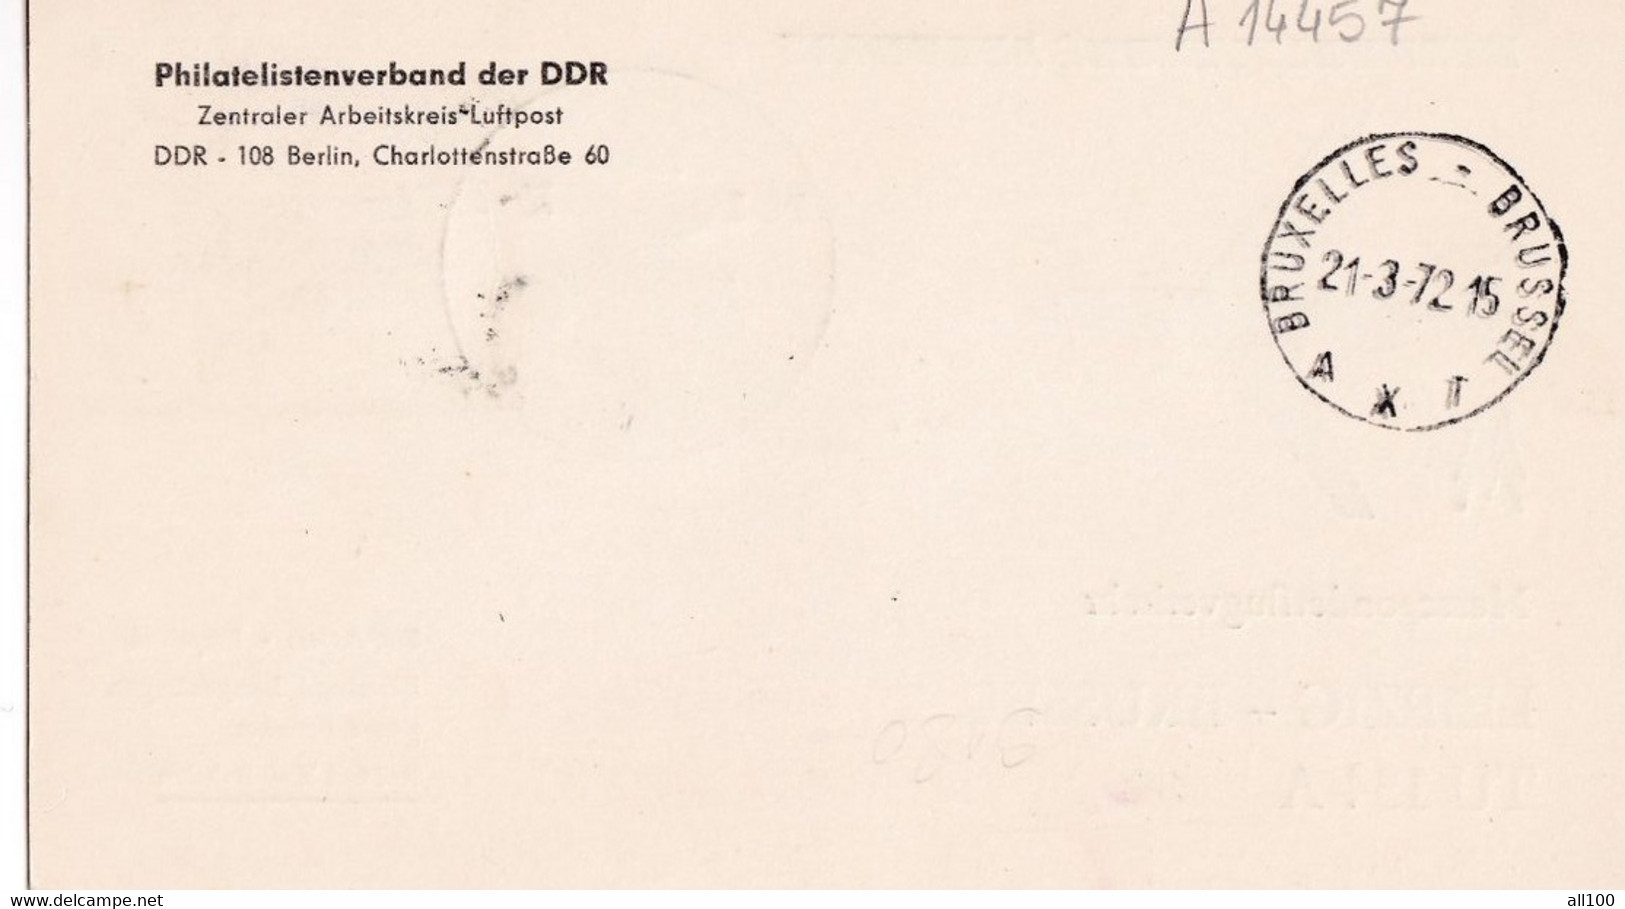 A14457 - CESKOSLOVENNSKE AEROLINE LEIPZIG - BRUSSEL 1972 SONDERFLUGVERKEHR MESSESONDERFLUGVERKEHR - Covers & Documents